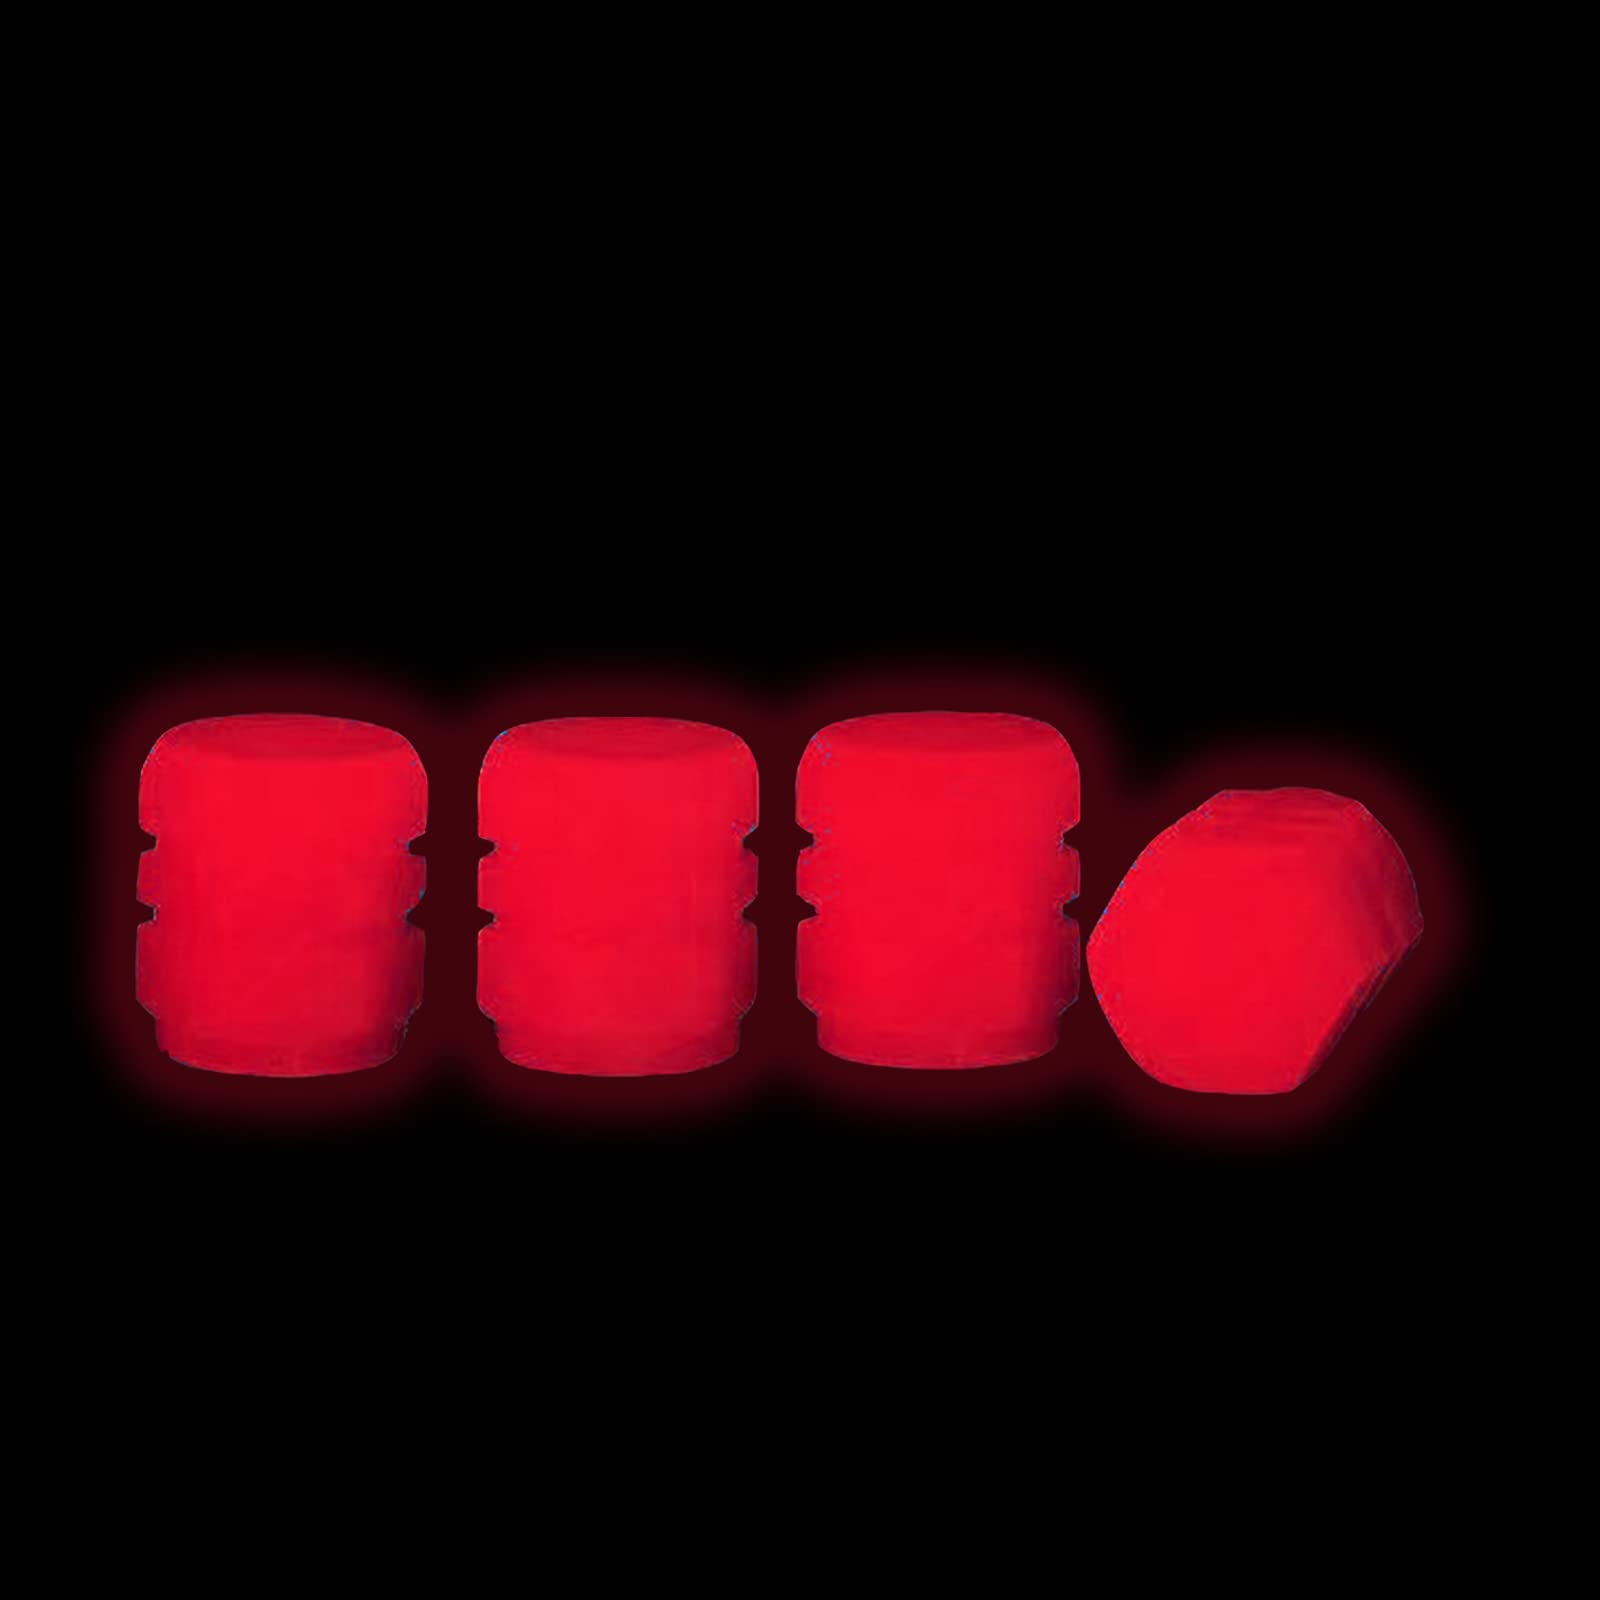 4 Stück Ventilkappen Auto, Universelle Fluoreszierende Autoreifen, im Dunkeln leuchtende Reifen Ventilkappen Ventilschaftabdeckung, Fashion Stem Cover für PKW & Fahrrad & Motorrad,Reifen & Rad (Rot) von MOREASE